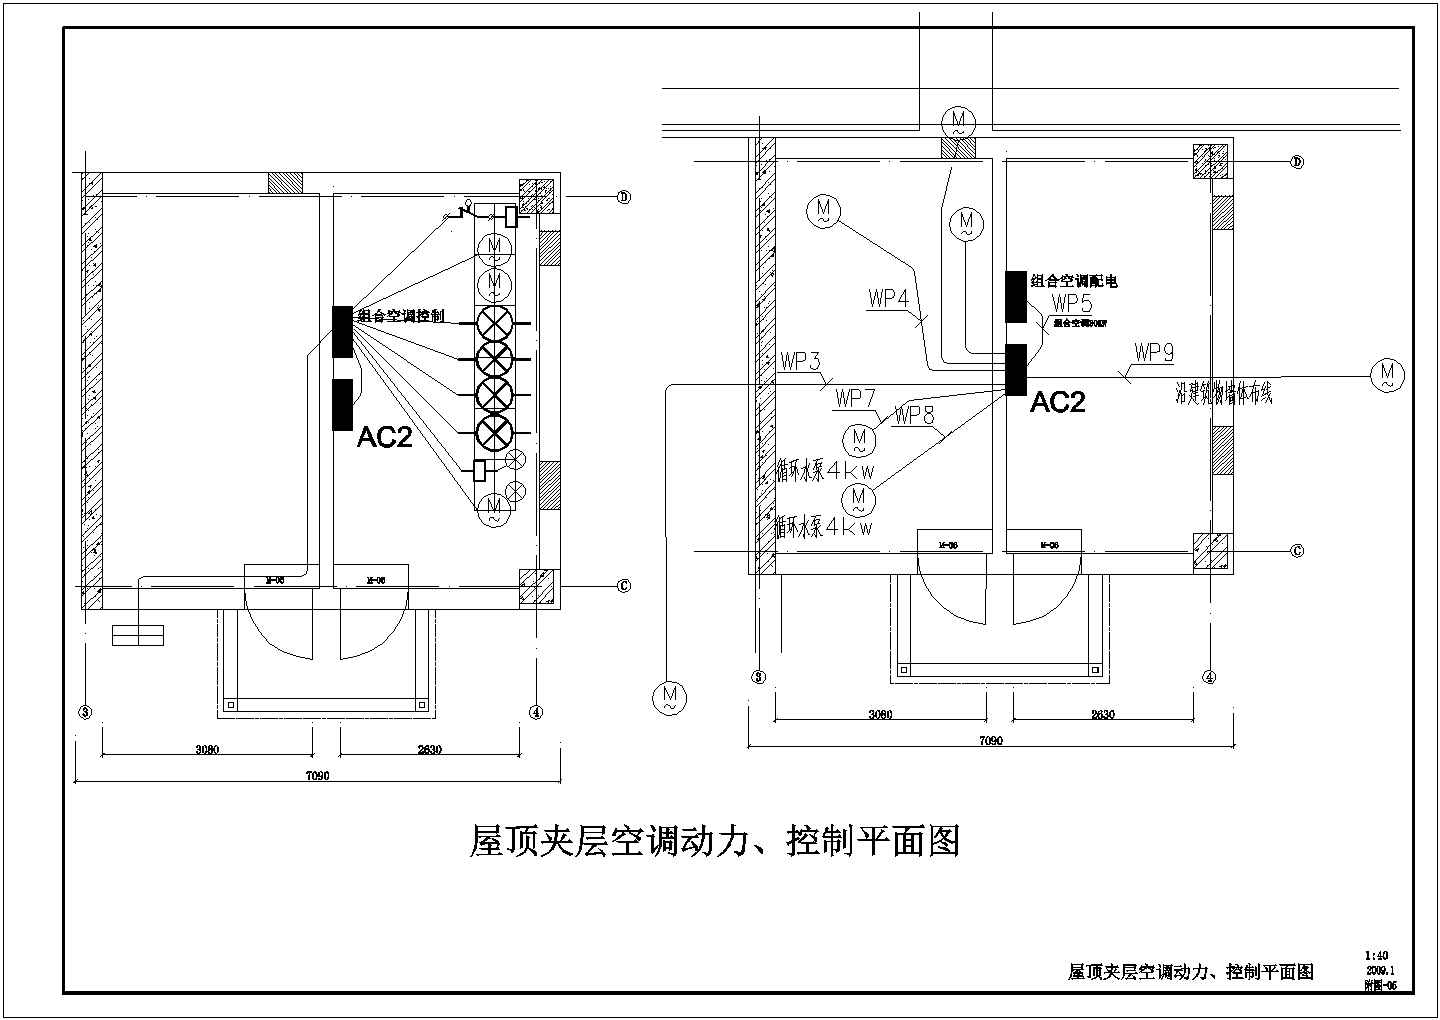 【北京】某医院机房电气改造设计施工图